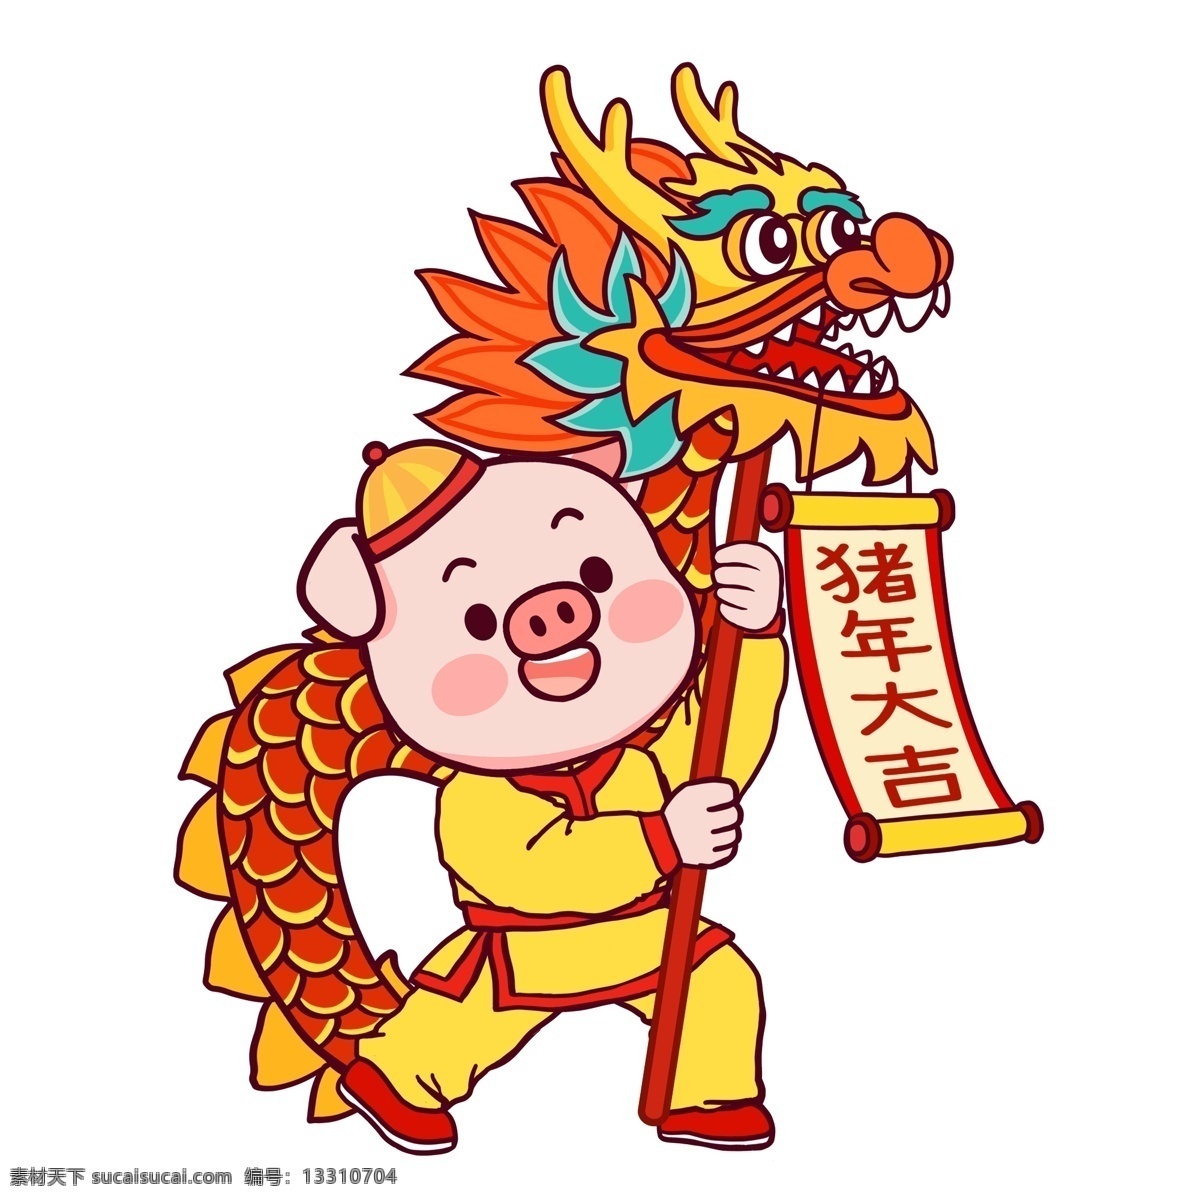 潮 漫 小 猪 舞狮 元素 卡通 喜庆 中国风 春节 潮漫 小猪 舞龙插画 猪年大吉 新年 猪年 小猪形象 猪年形象